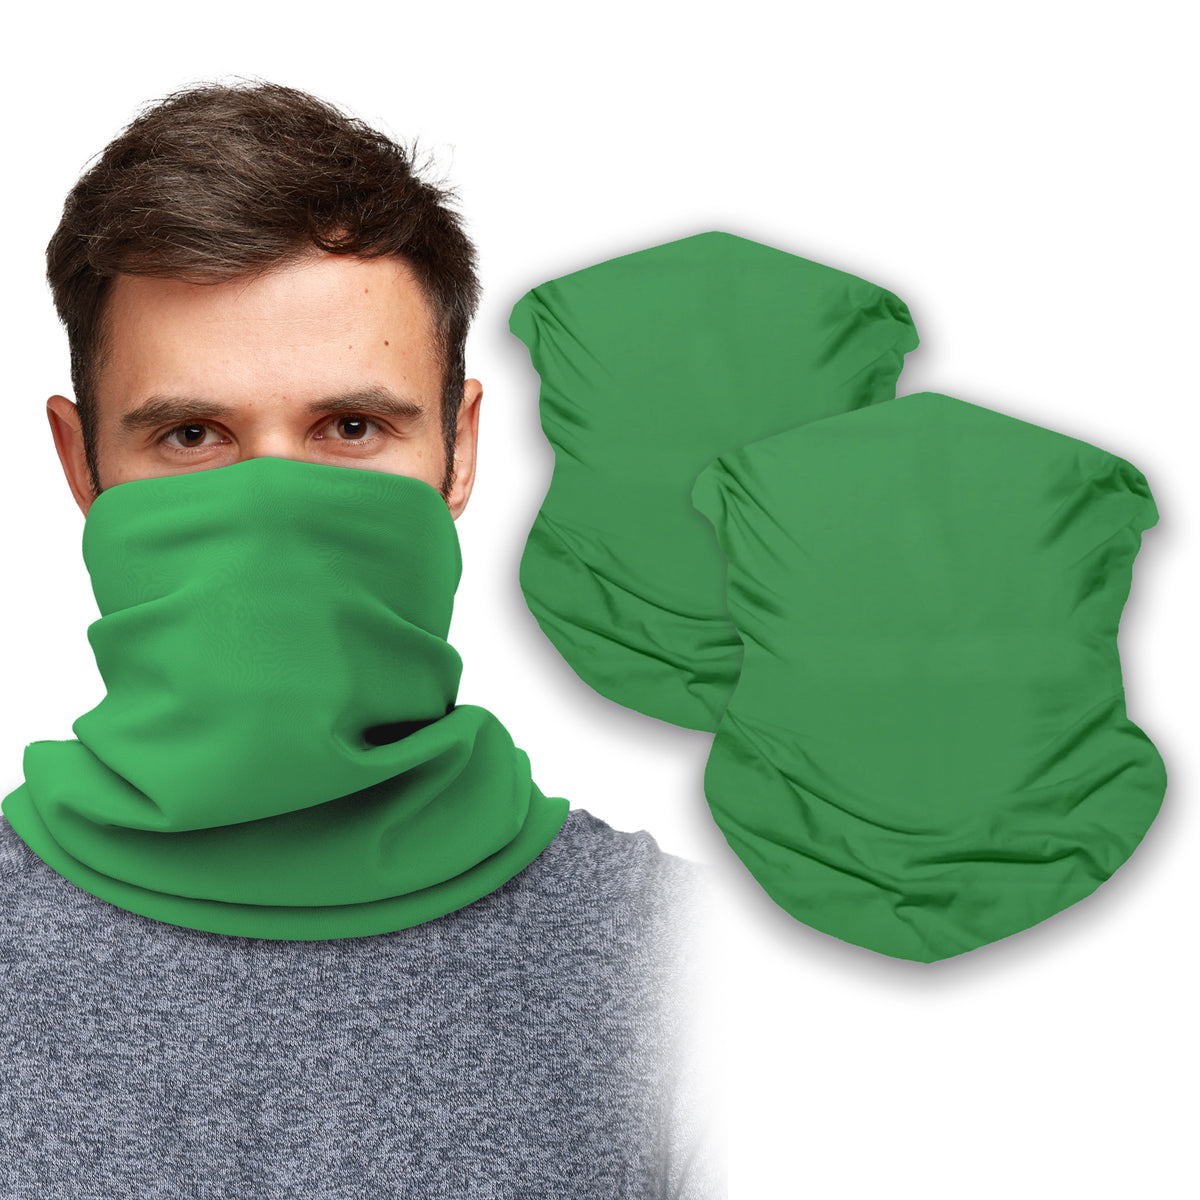 Hunting Neck Gaiter Face Mask Bandana (2 Pack) - Neck Gators Face Coverings for Men & Women I Green Neck Gator Masks